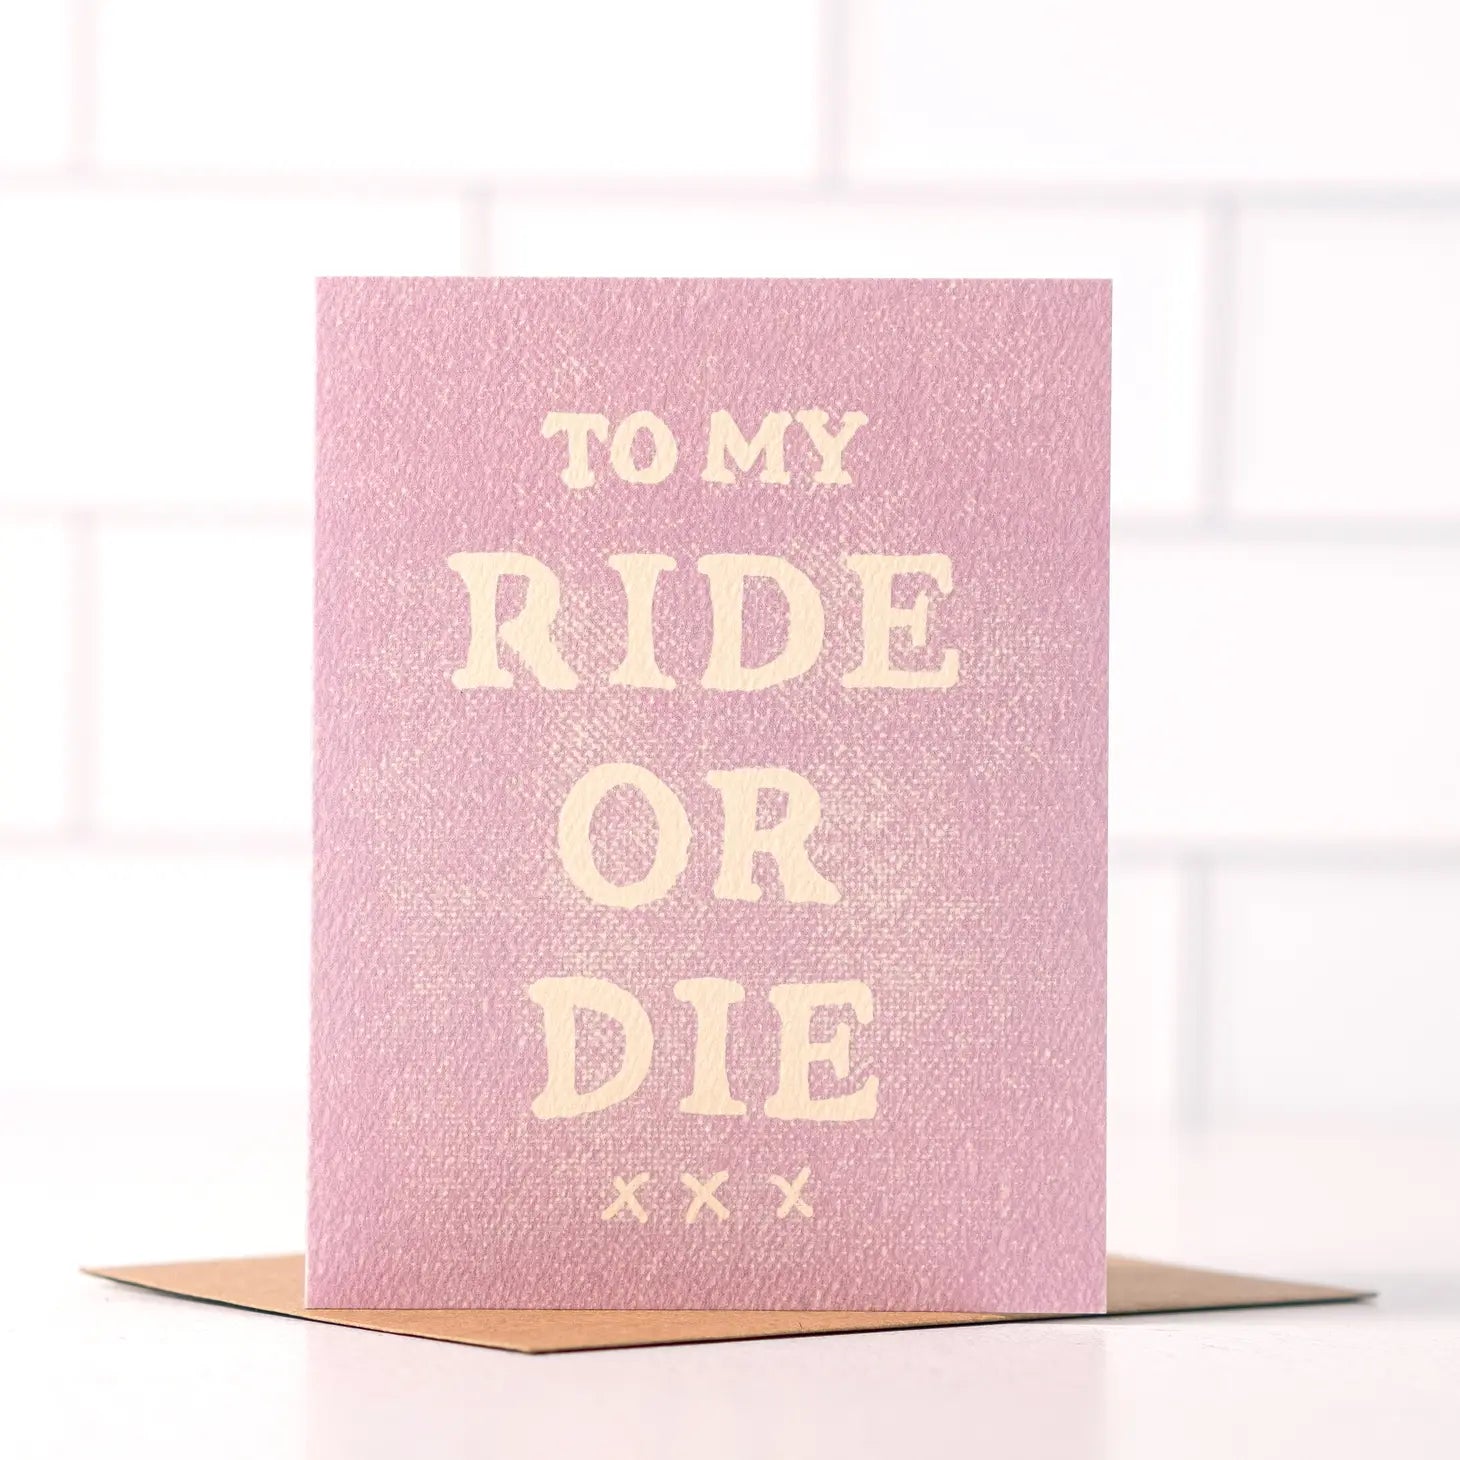 To My Ride or Die | Card